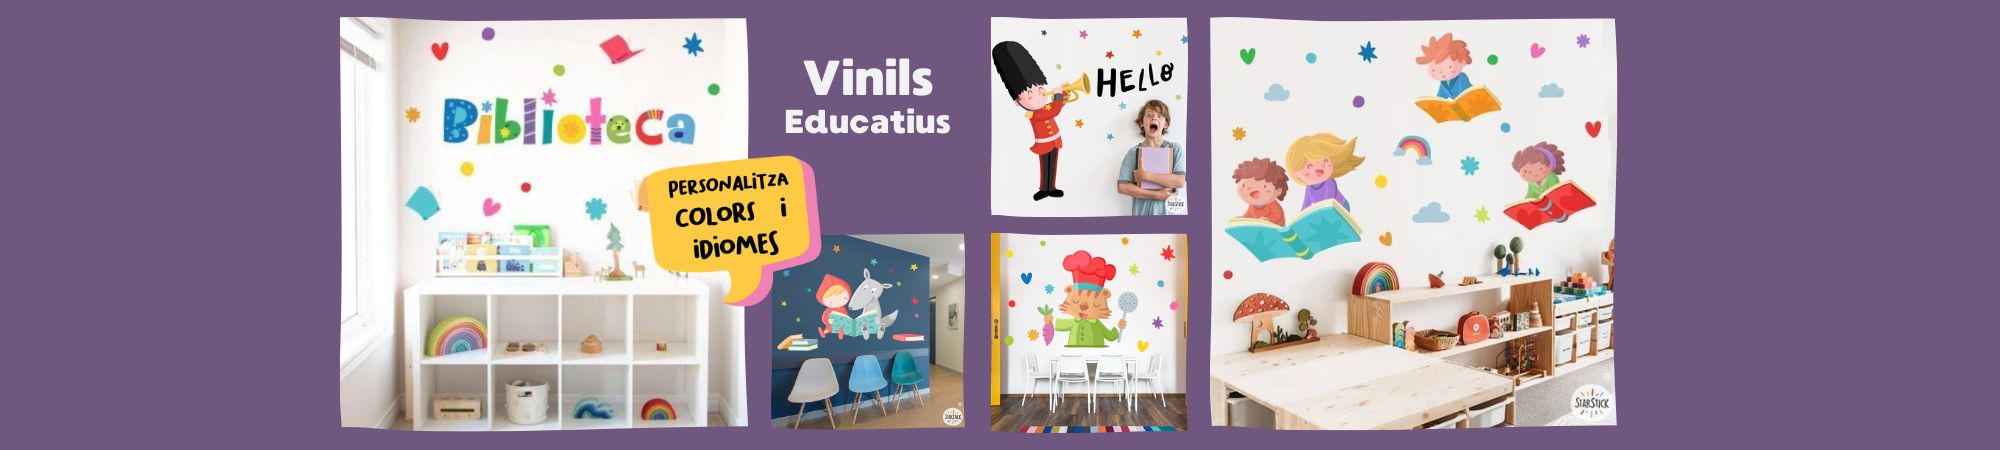 Transforma el entorno educativo de forma creativa y atractiva con la exclusiva colección de vinilos decorativos educativos de StarStick.